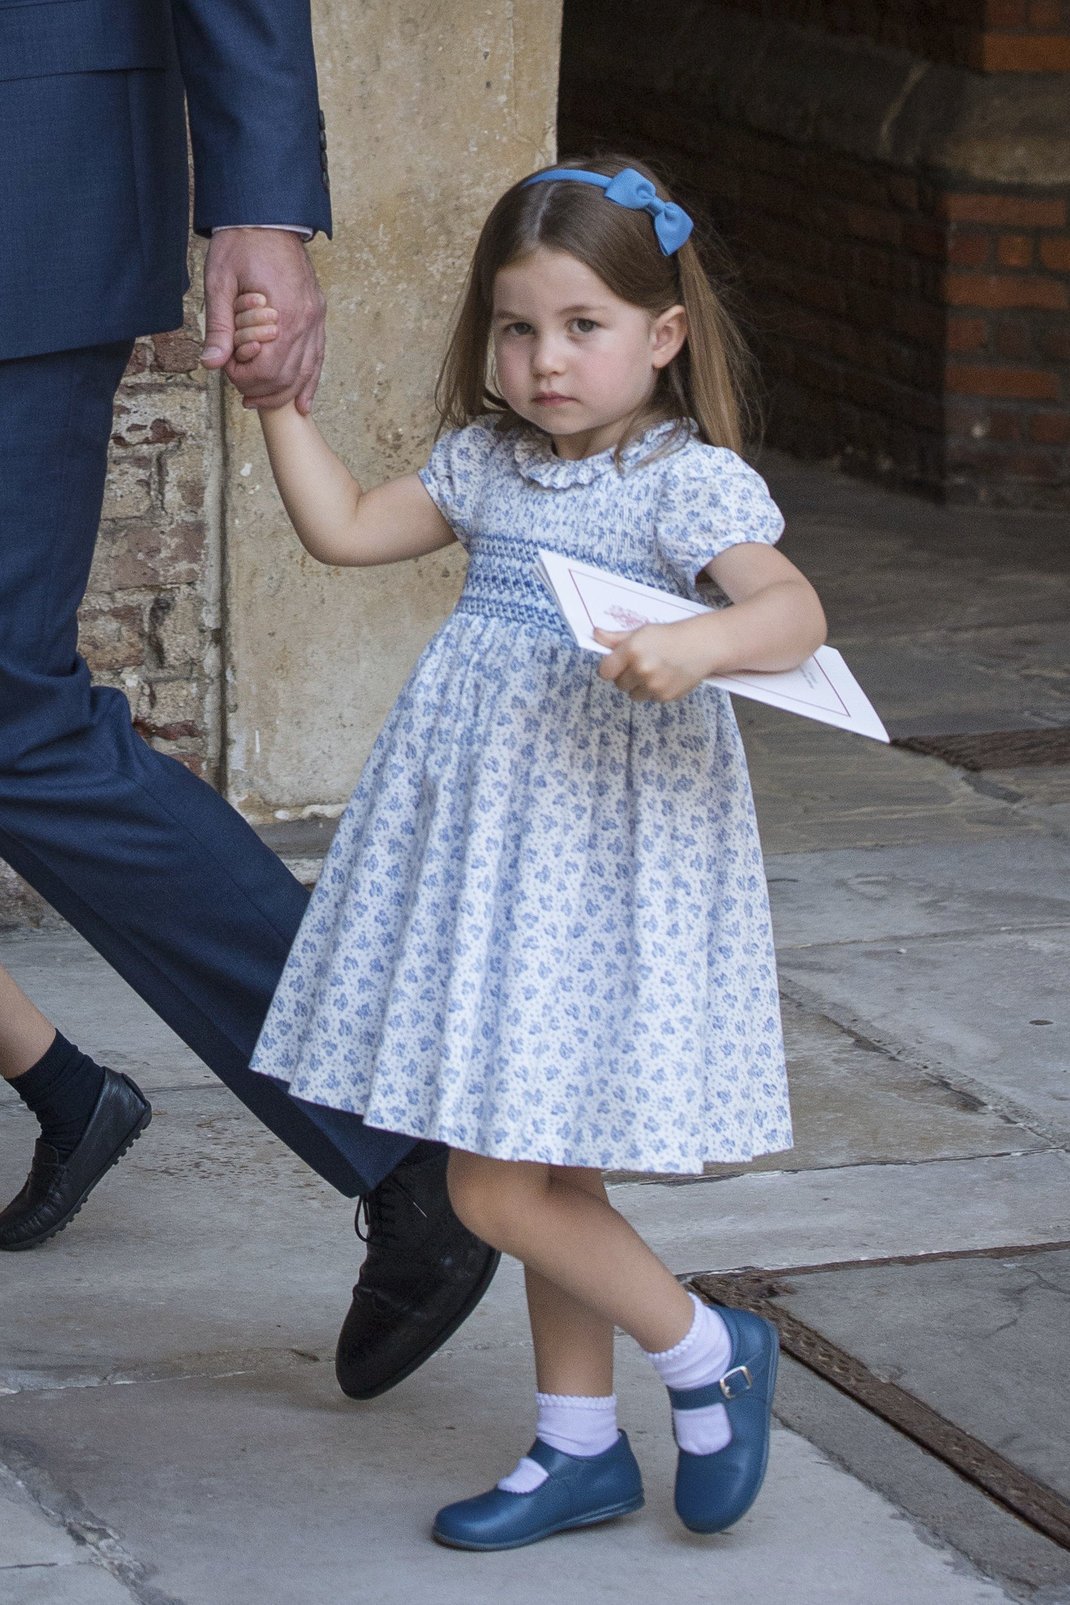 Η πριγκίπισσα Σάρλοτ κλέβει πάντα με τον δικό της τρόπο την παράσταση/ AP Images